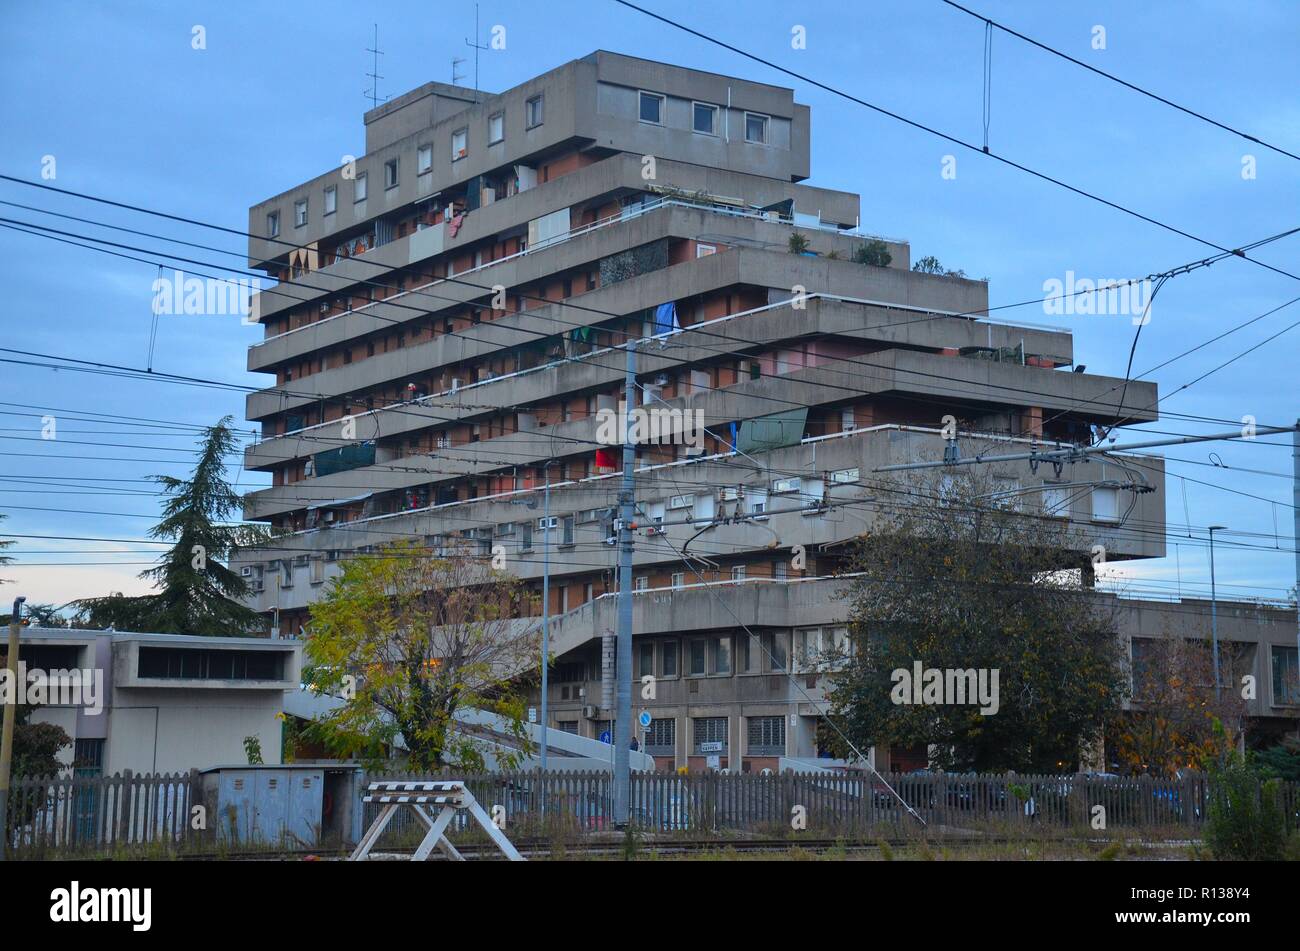 Modena, eine Stadt in der Region Emilia-Romagna in Italien: Ein Wohnblock im Stil des Brutalismus Stockfoto